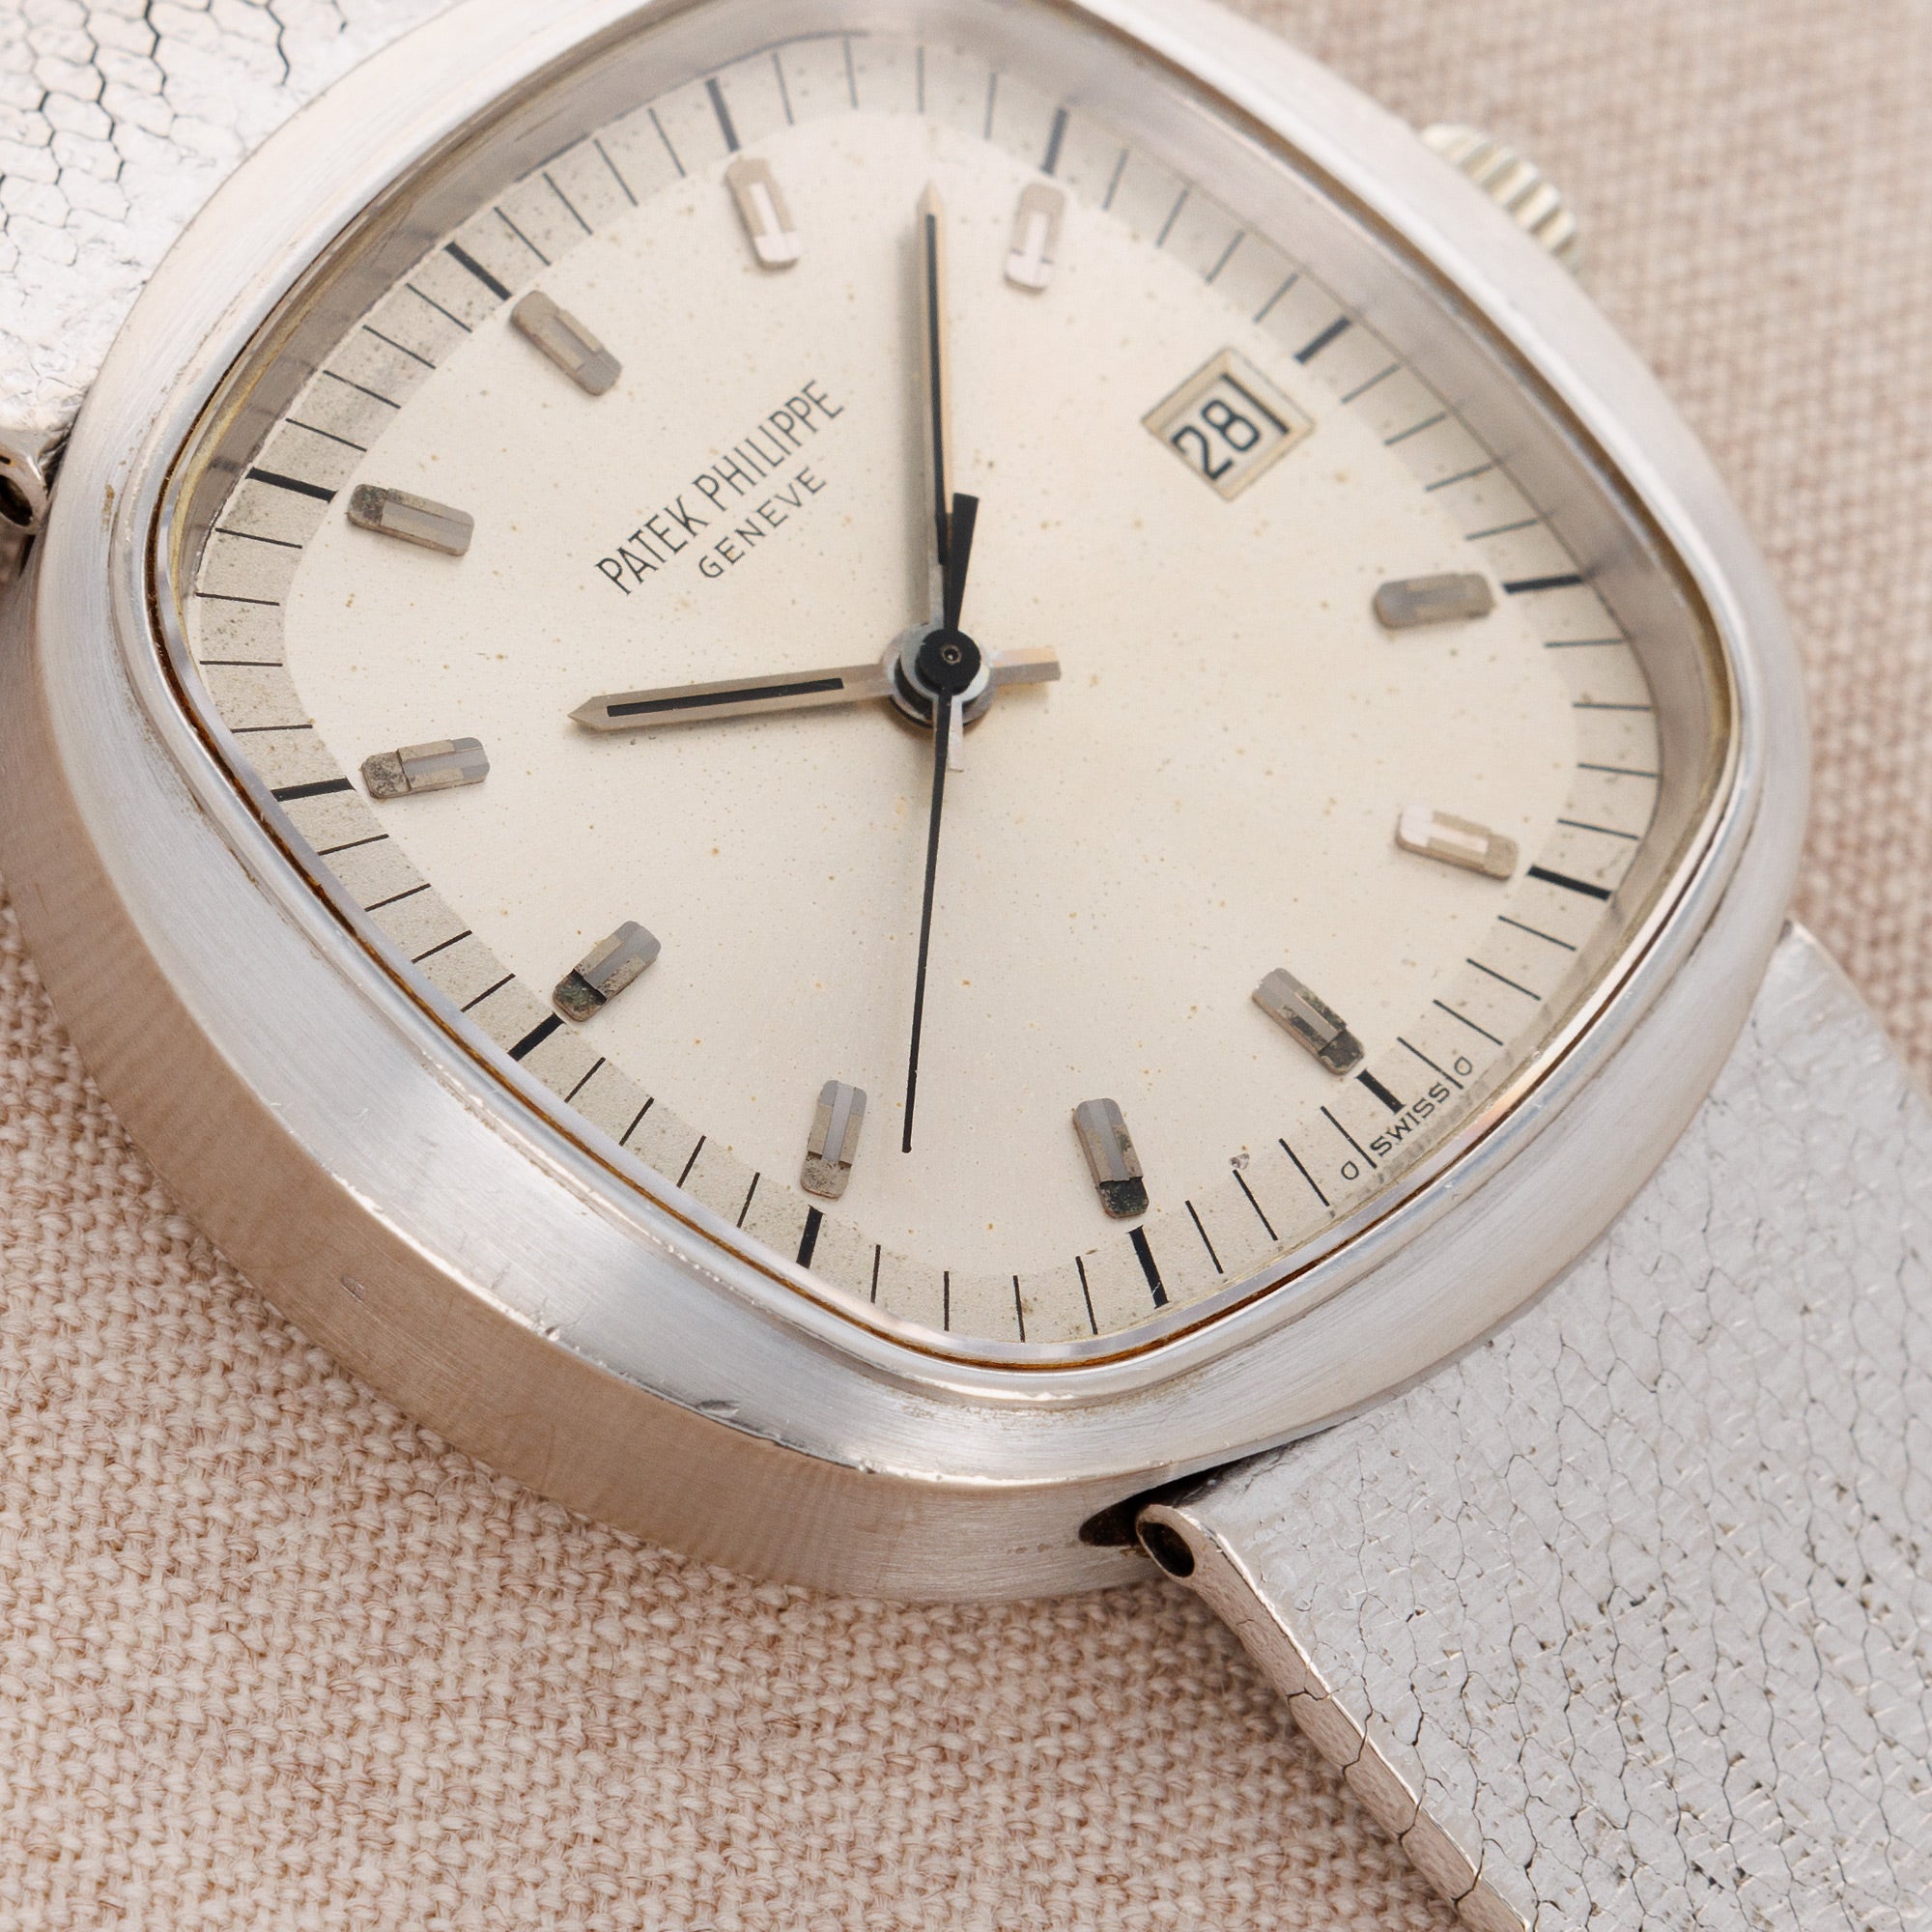 Patek Philippe - Patek Philippe White Gold Beta 21 Watch Ref. 3597 - The Keystone Watches